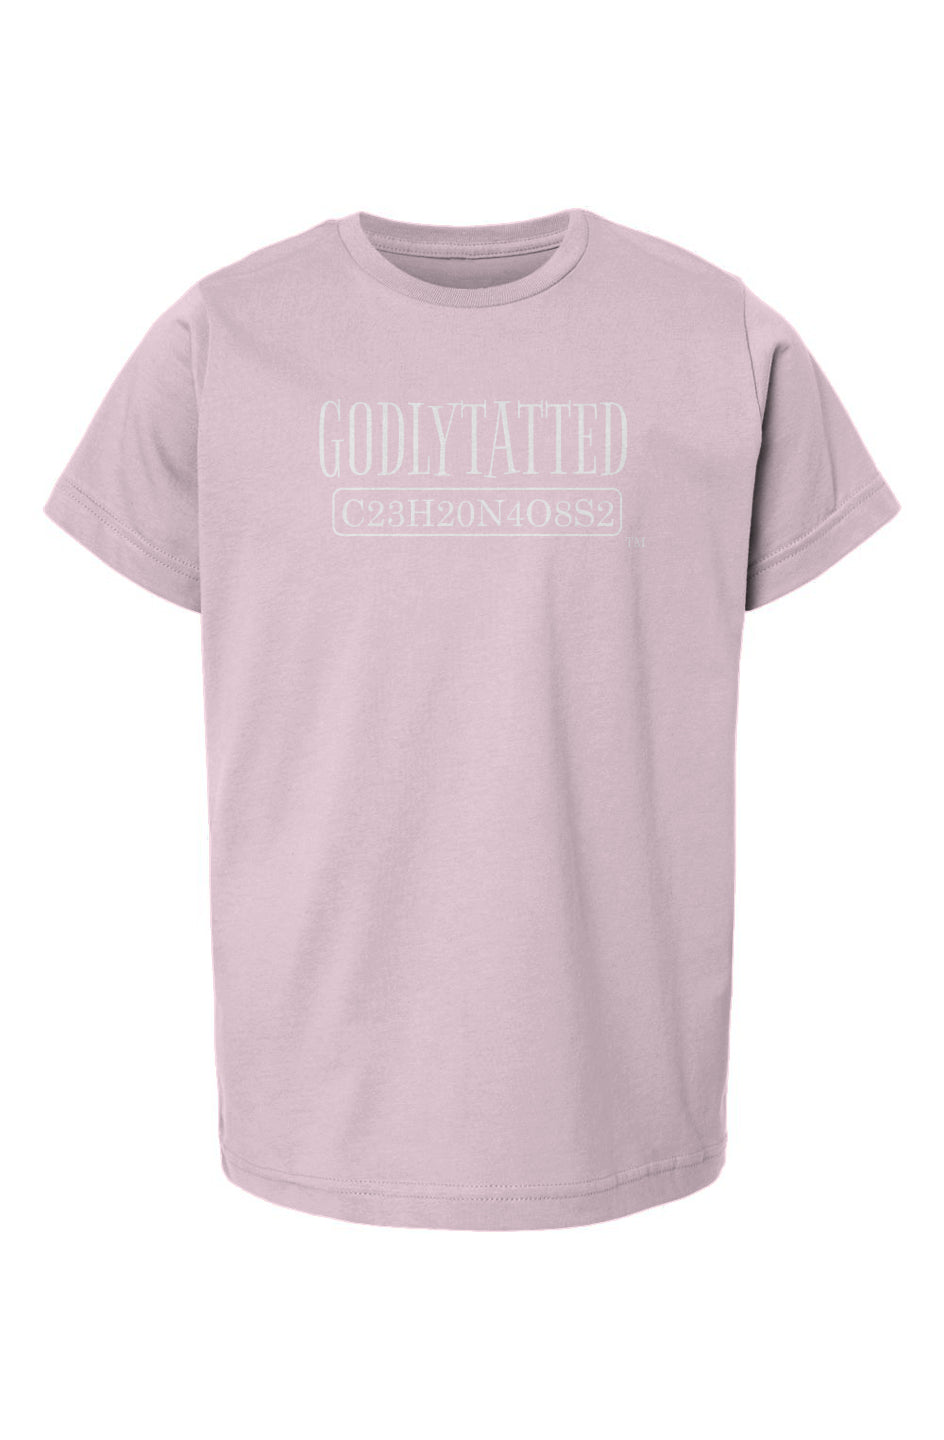 godlytatted - kids - Pink - white logo